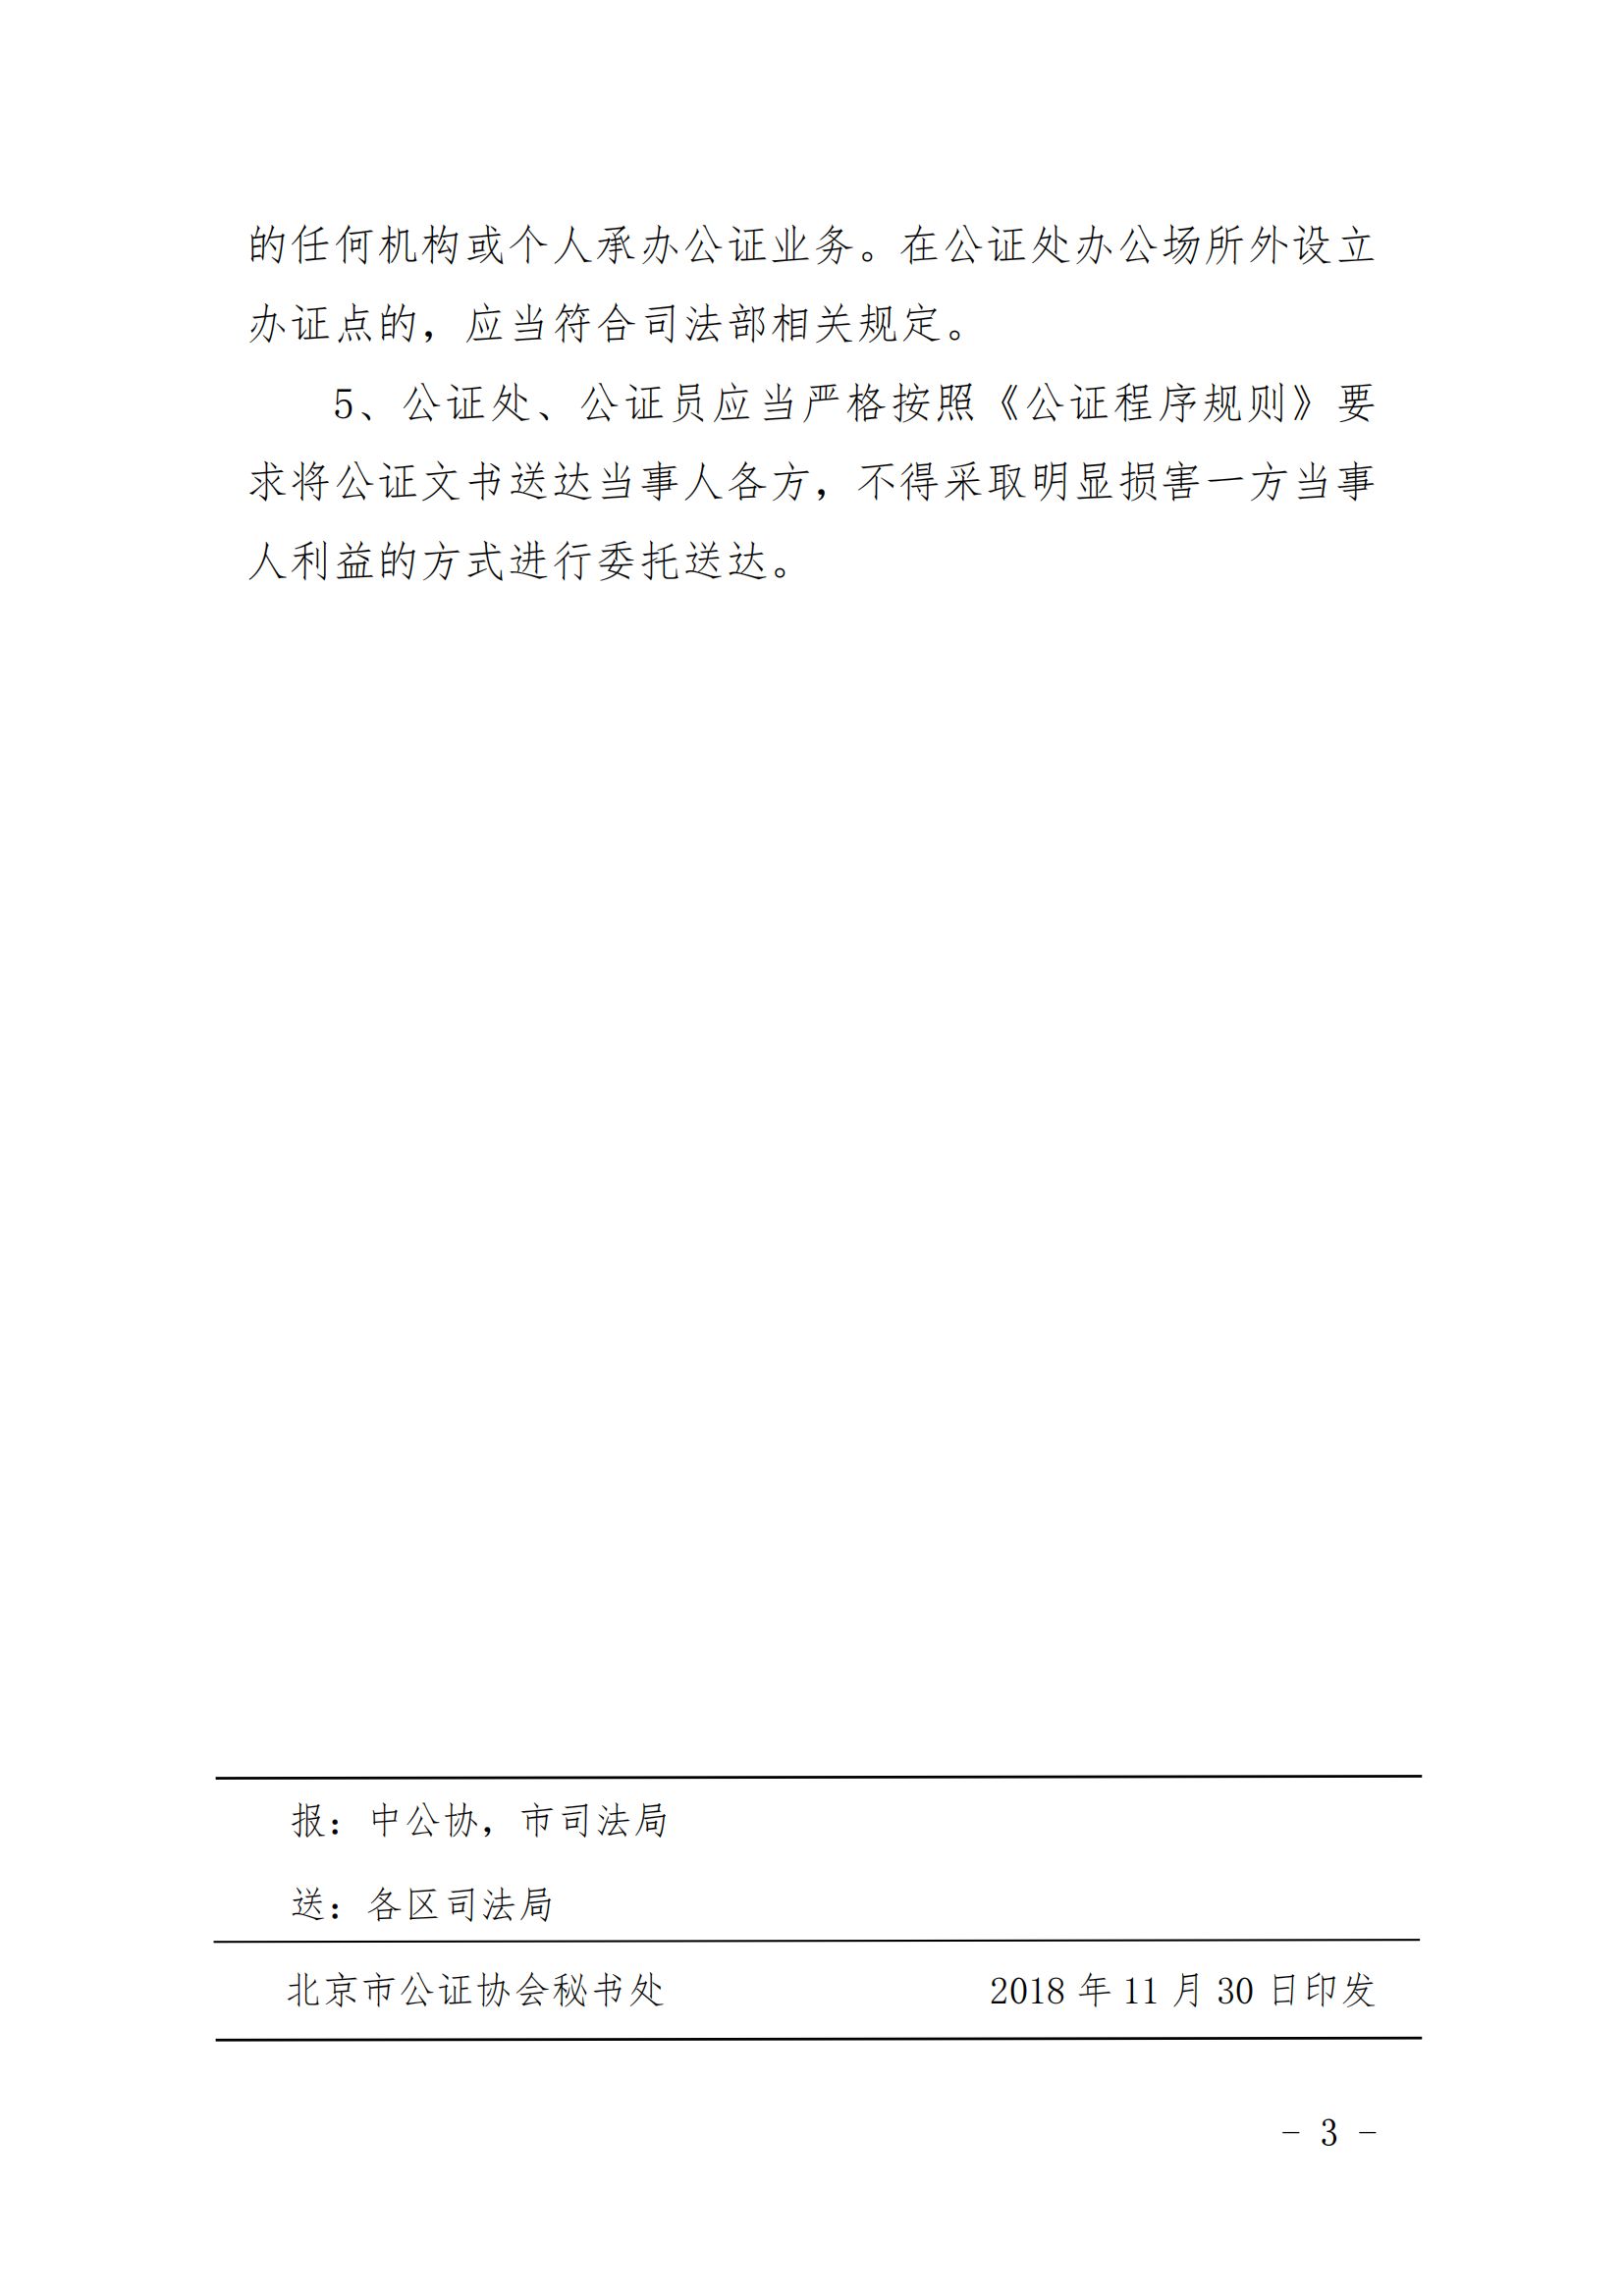 3、北京市公证协会关于印发《北京市公证协会规范执业指引》第3号的通知_02